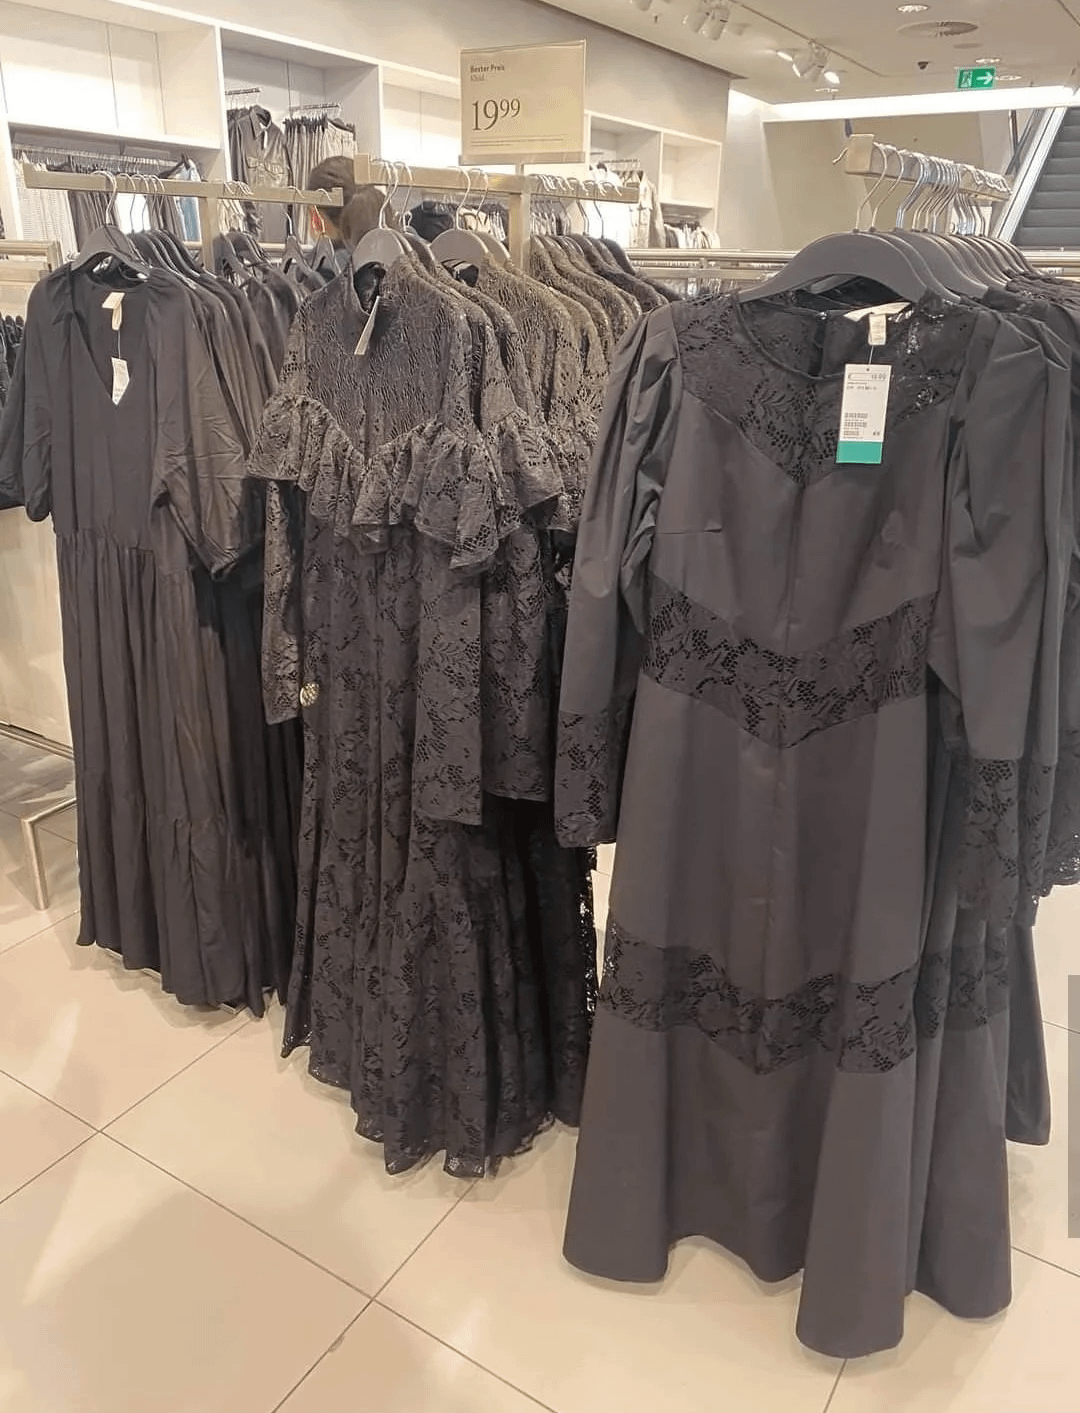 Usuarios en X se vacilan con peculiar colección de vestidos de H&M